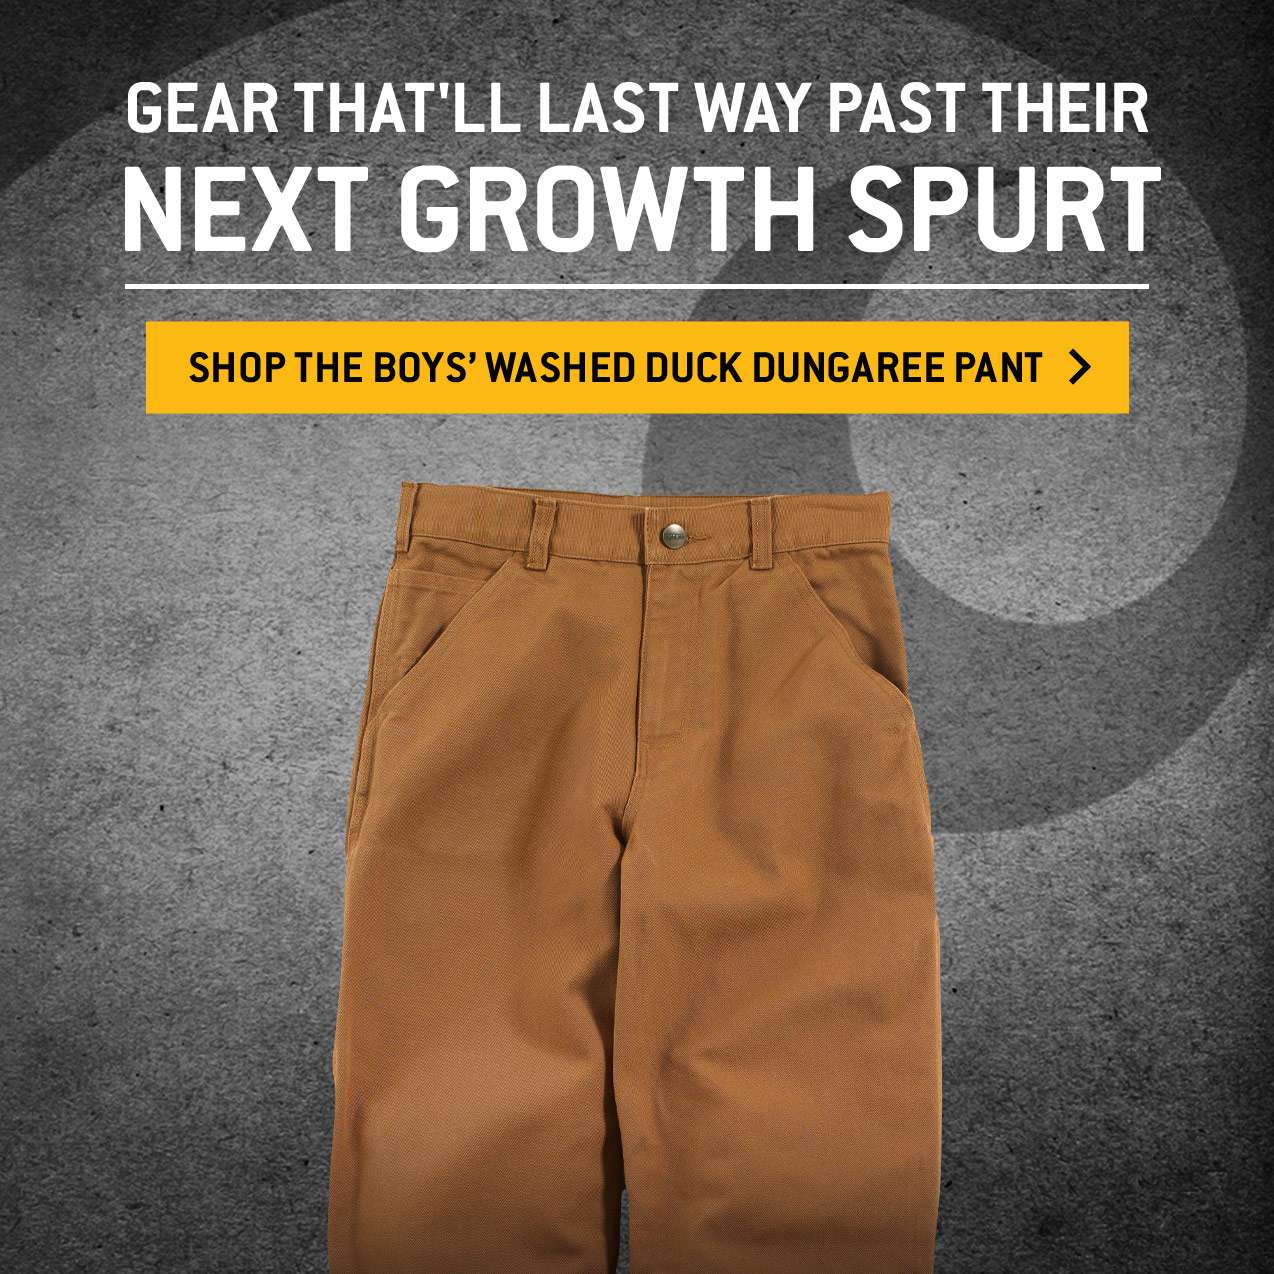 carhartt pants for boys